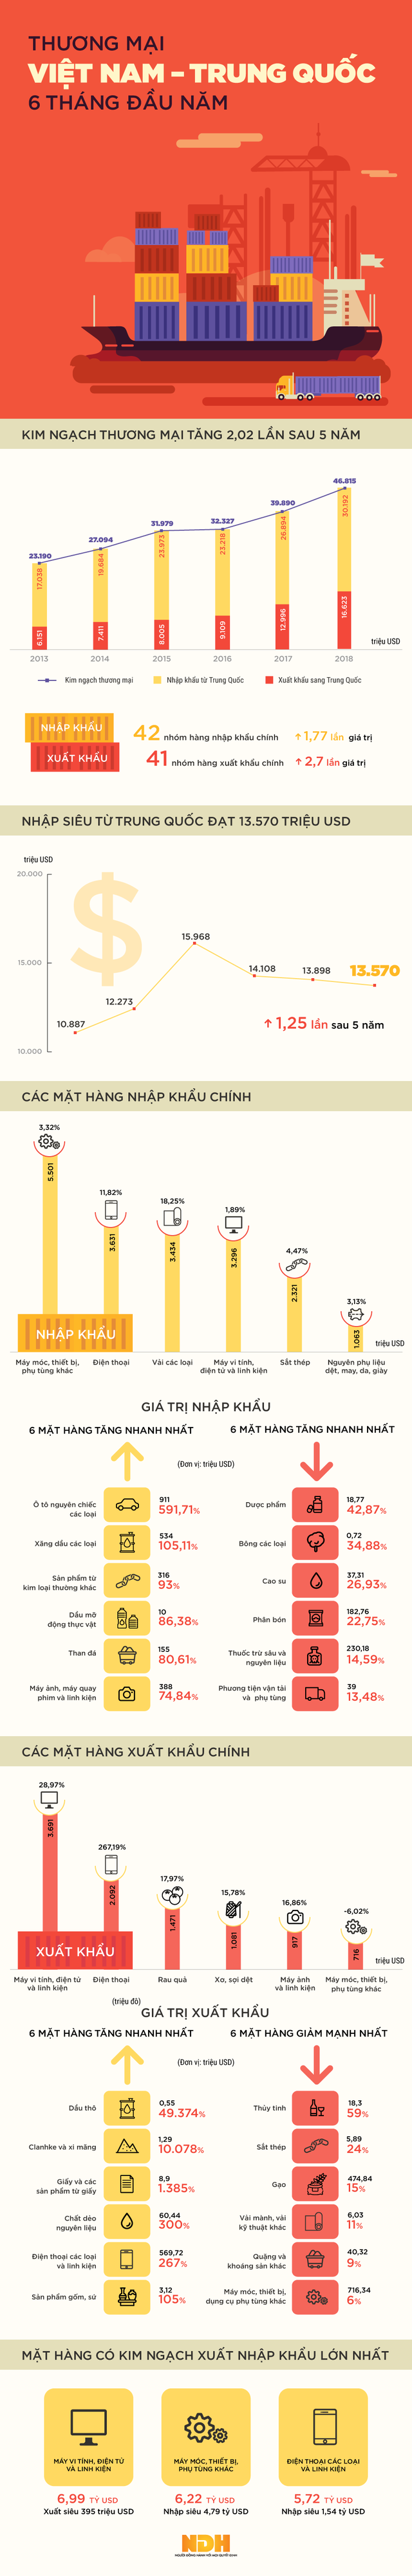 Infographic: Kim ngạch thương mại Việt Nam - Trung Quốc cao gấp đôi sau 5 năm - Ảnh 1.